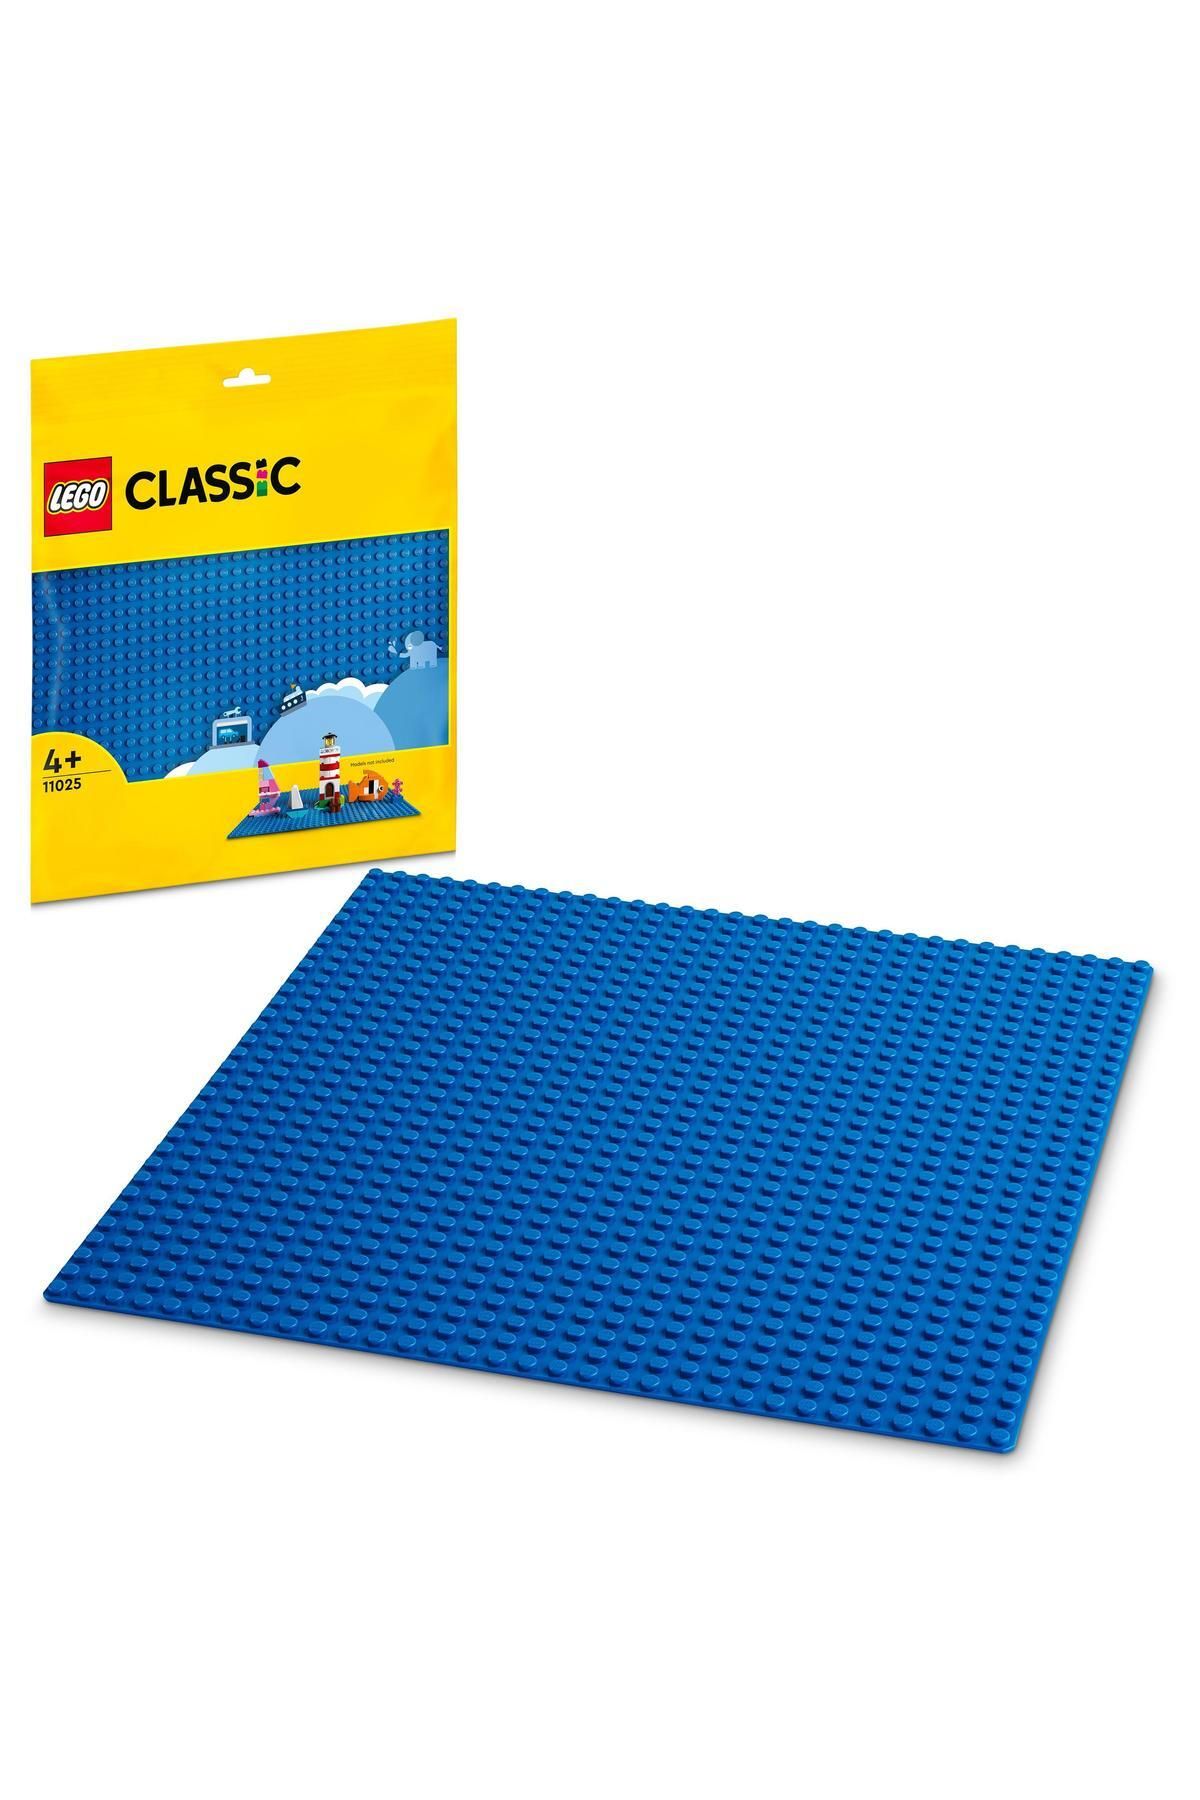 LEGO Classic Mavi Plaka 11025.